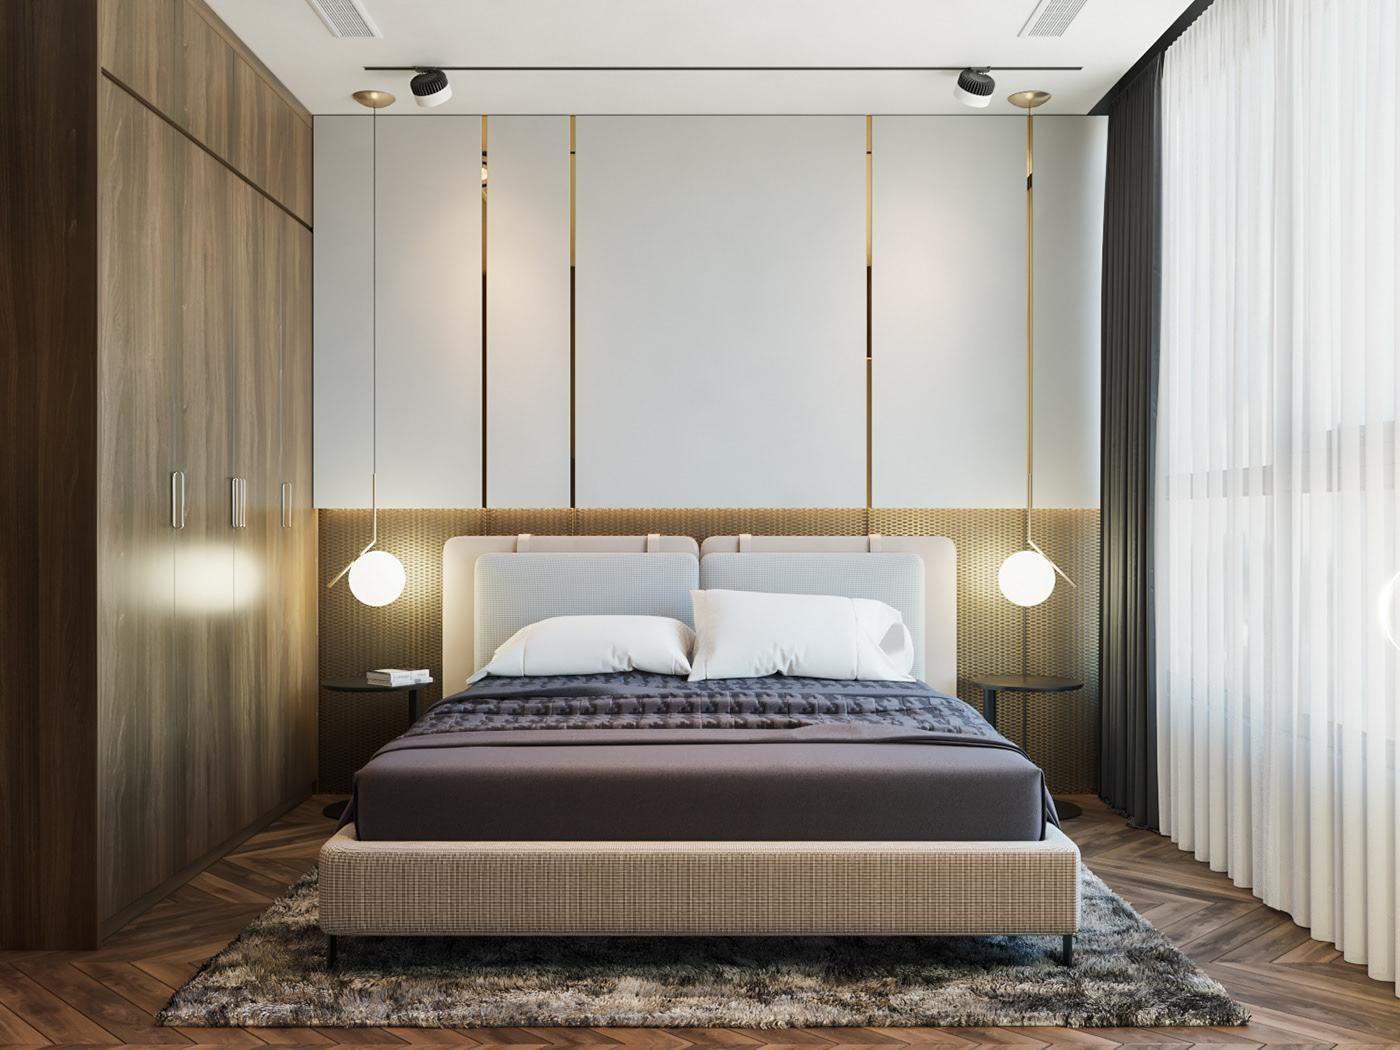 Những quy tắc cải tạo phòng ngủ giúp bạn ngon giấc